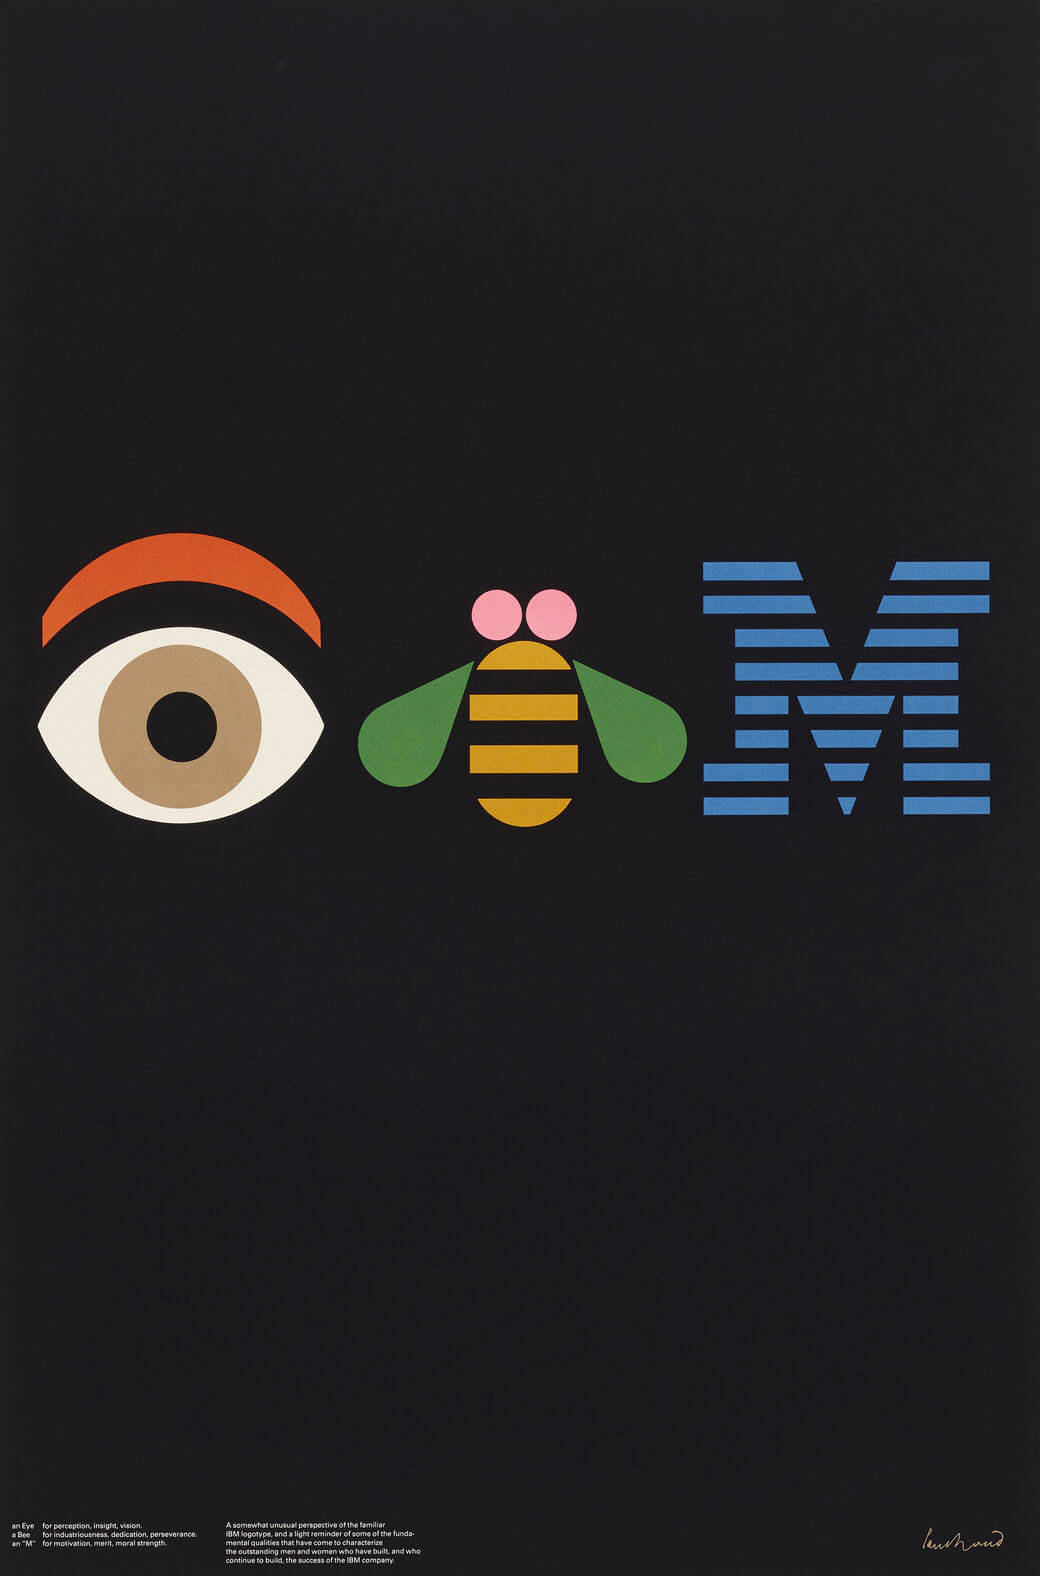 Paul Rand’s IBM poster design